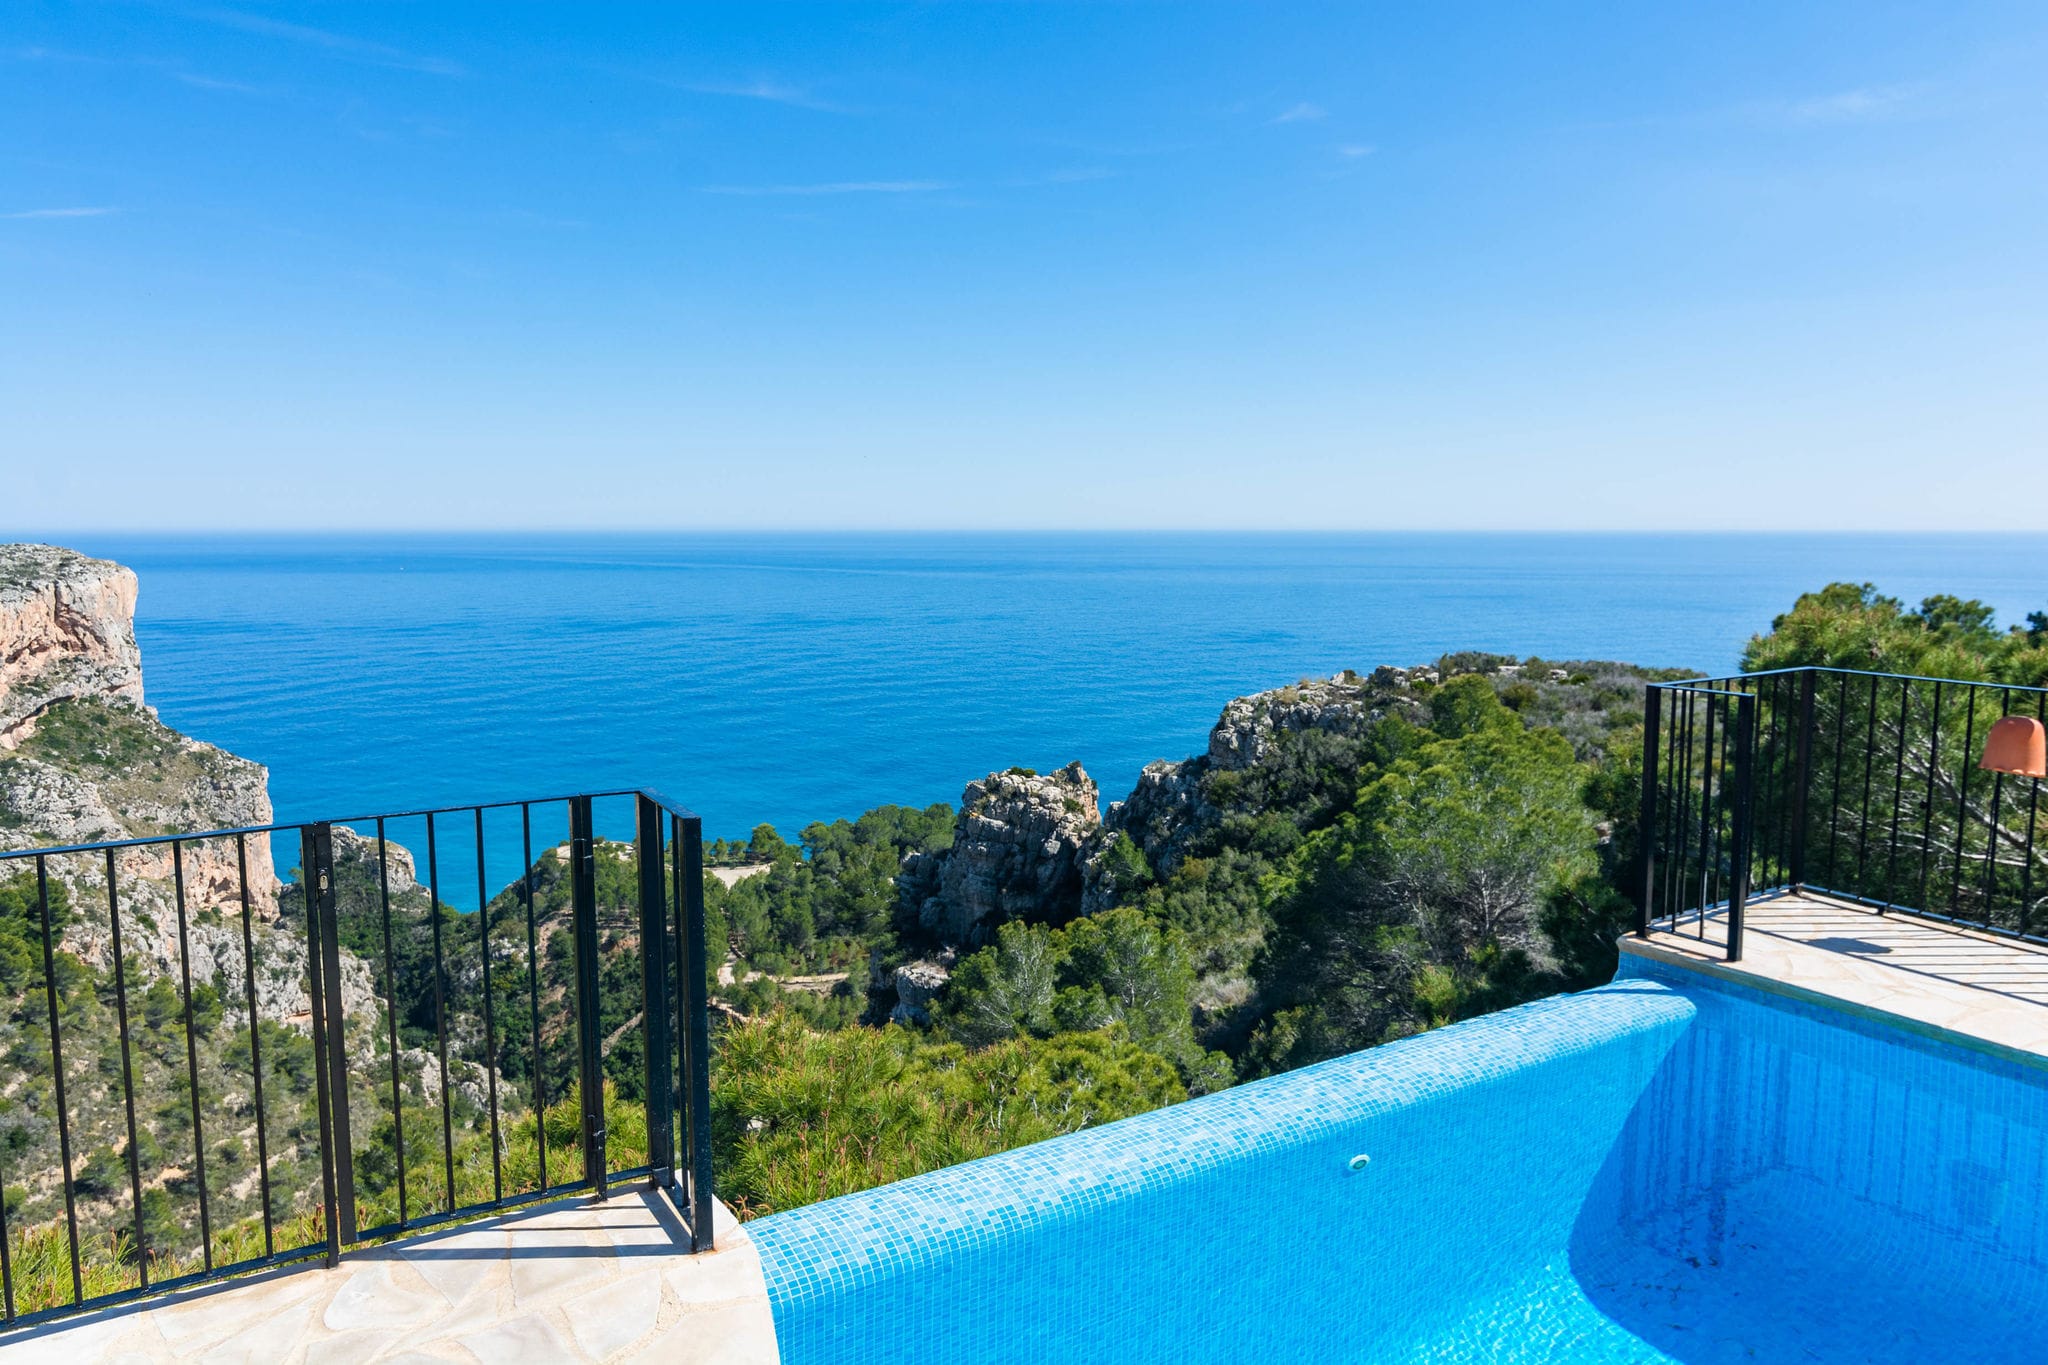 Belle maison de vacances 6p avec piscine à débordement, vue mer phénoménale